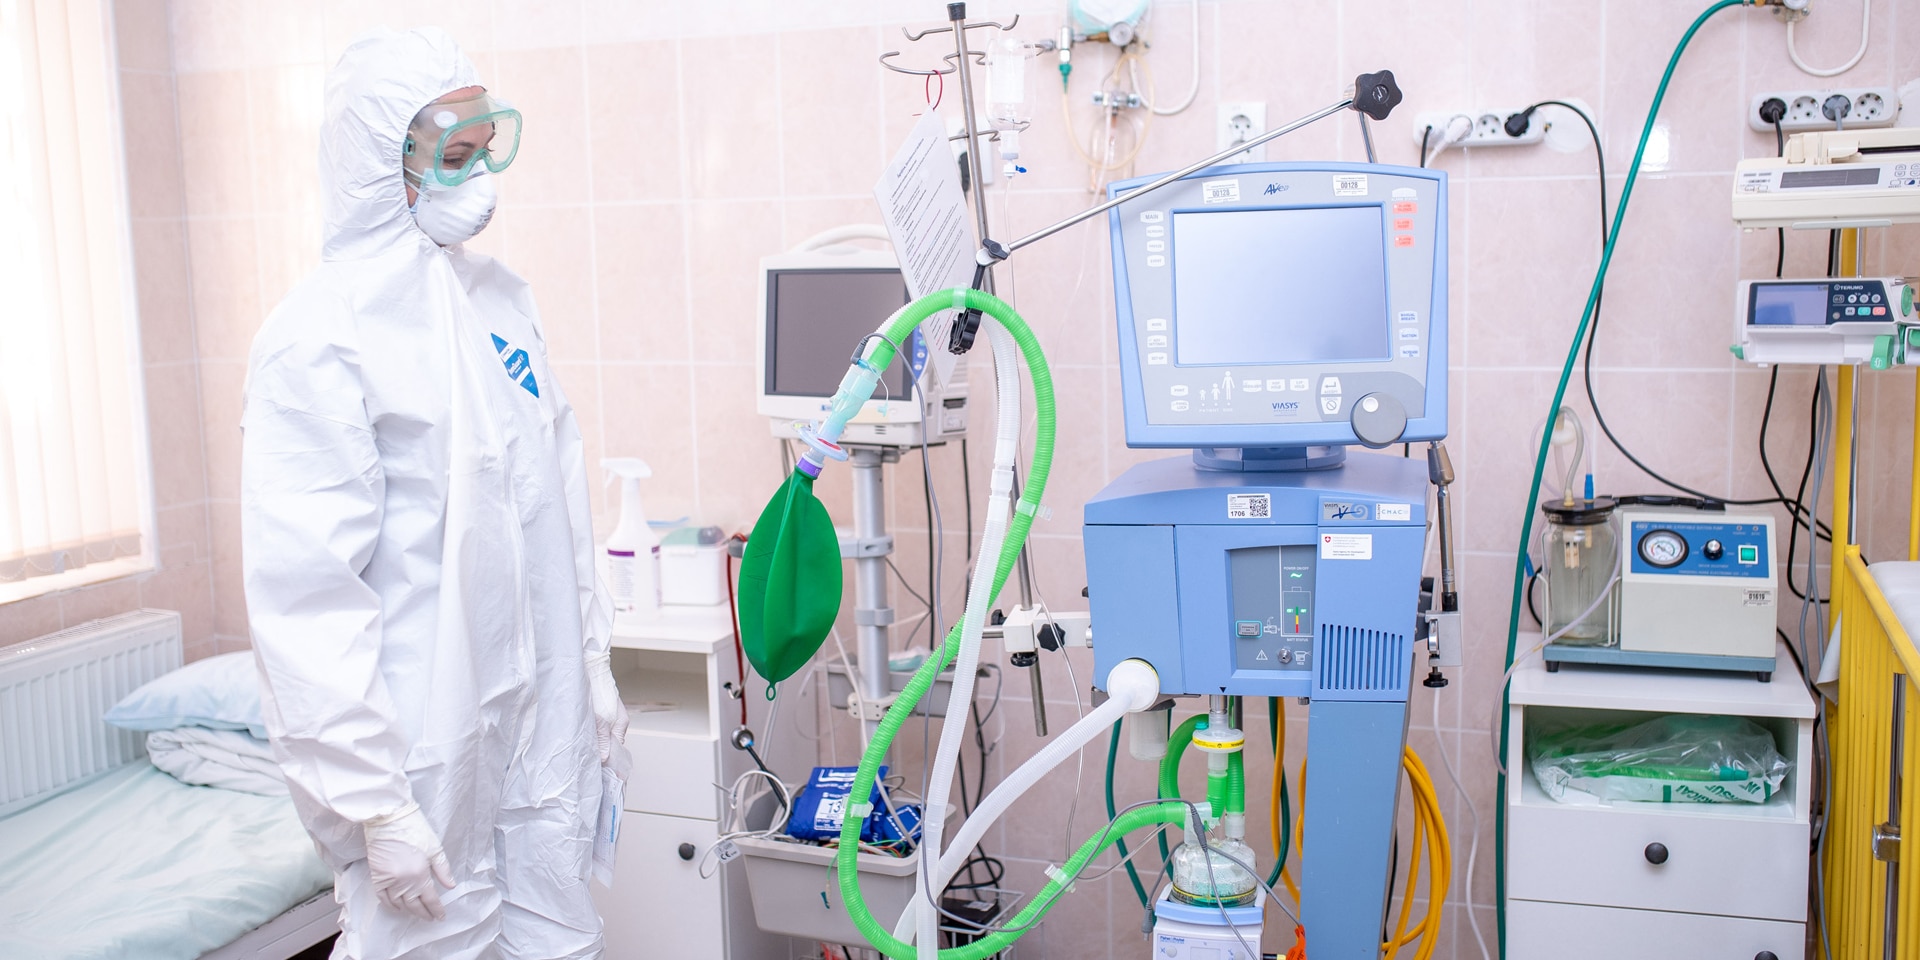 Dans une chambre d’hôpital, une femme portant un masque, des lunettes et une combinaison de protection se tient debout à côté d’appareils médicaux. 